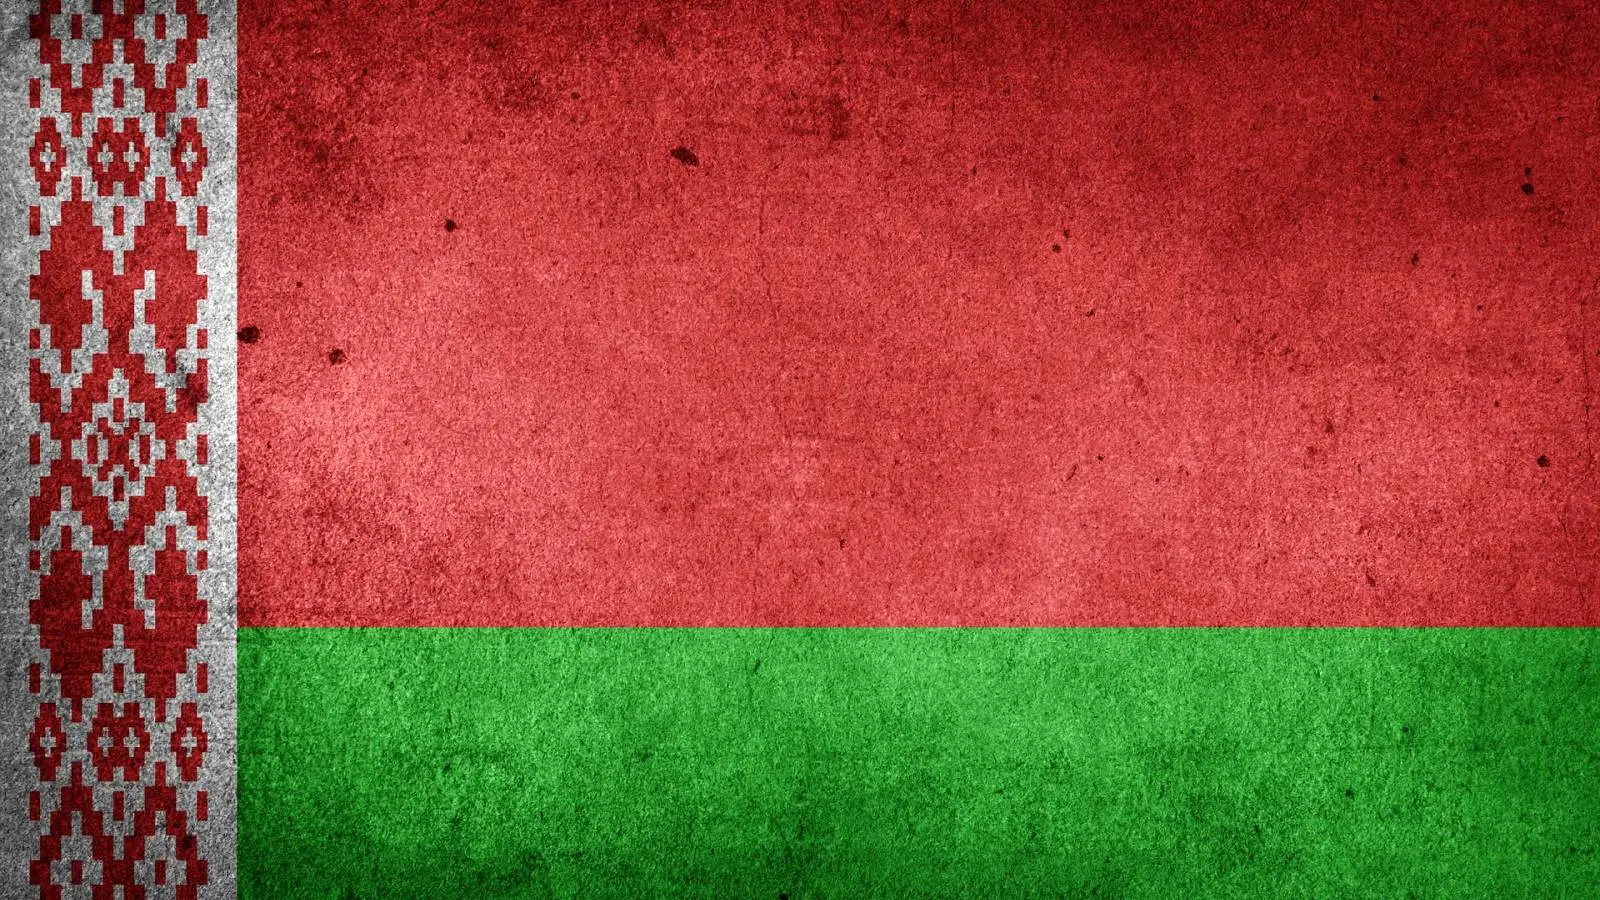 Hviderusland har ikke til hensigt at mobilisere hæren til at hjælpe Rusland i krigen